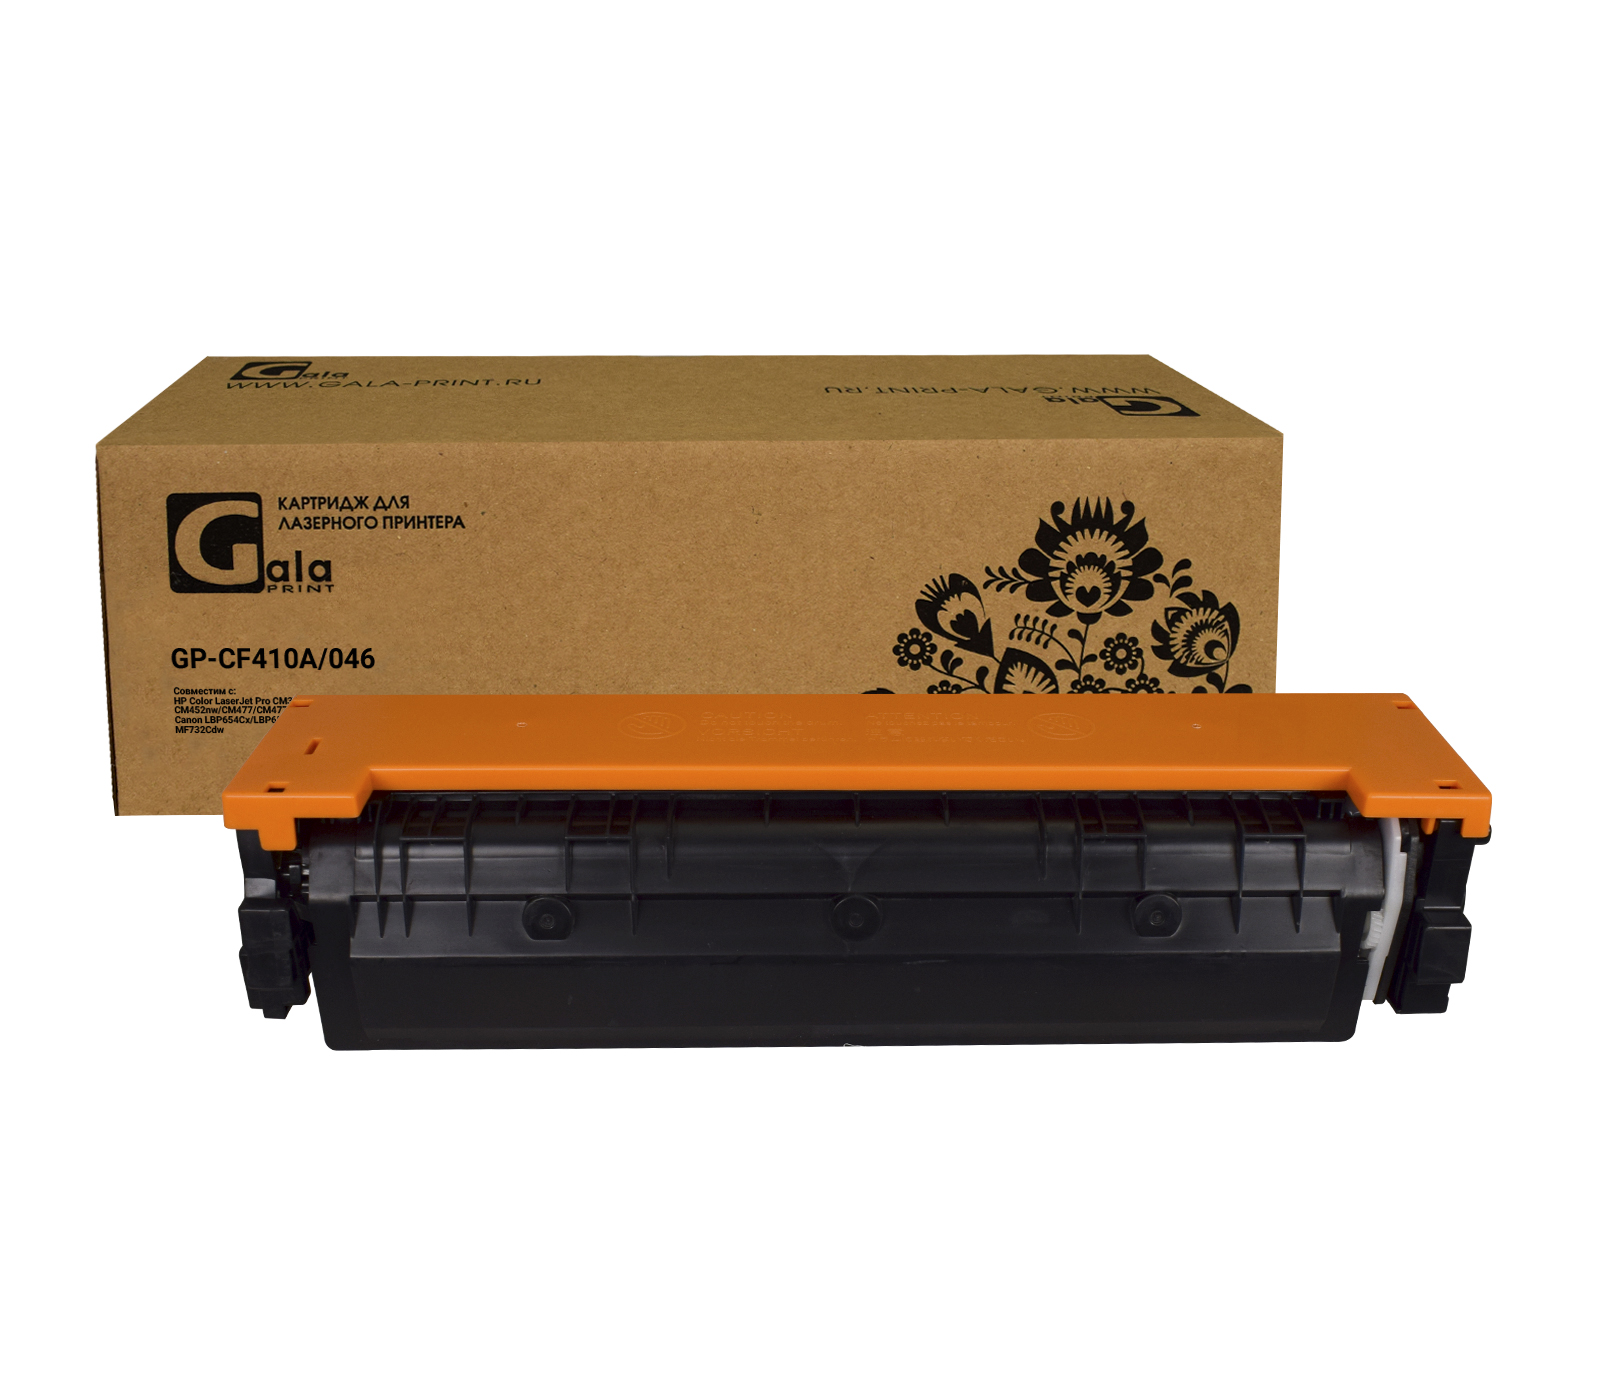 Картридж GP-CF410A №410A для принтеров HP LaserJet Pro M477/M452 Black 2300 копий GalaPrint